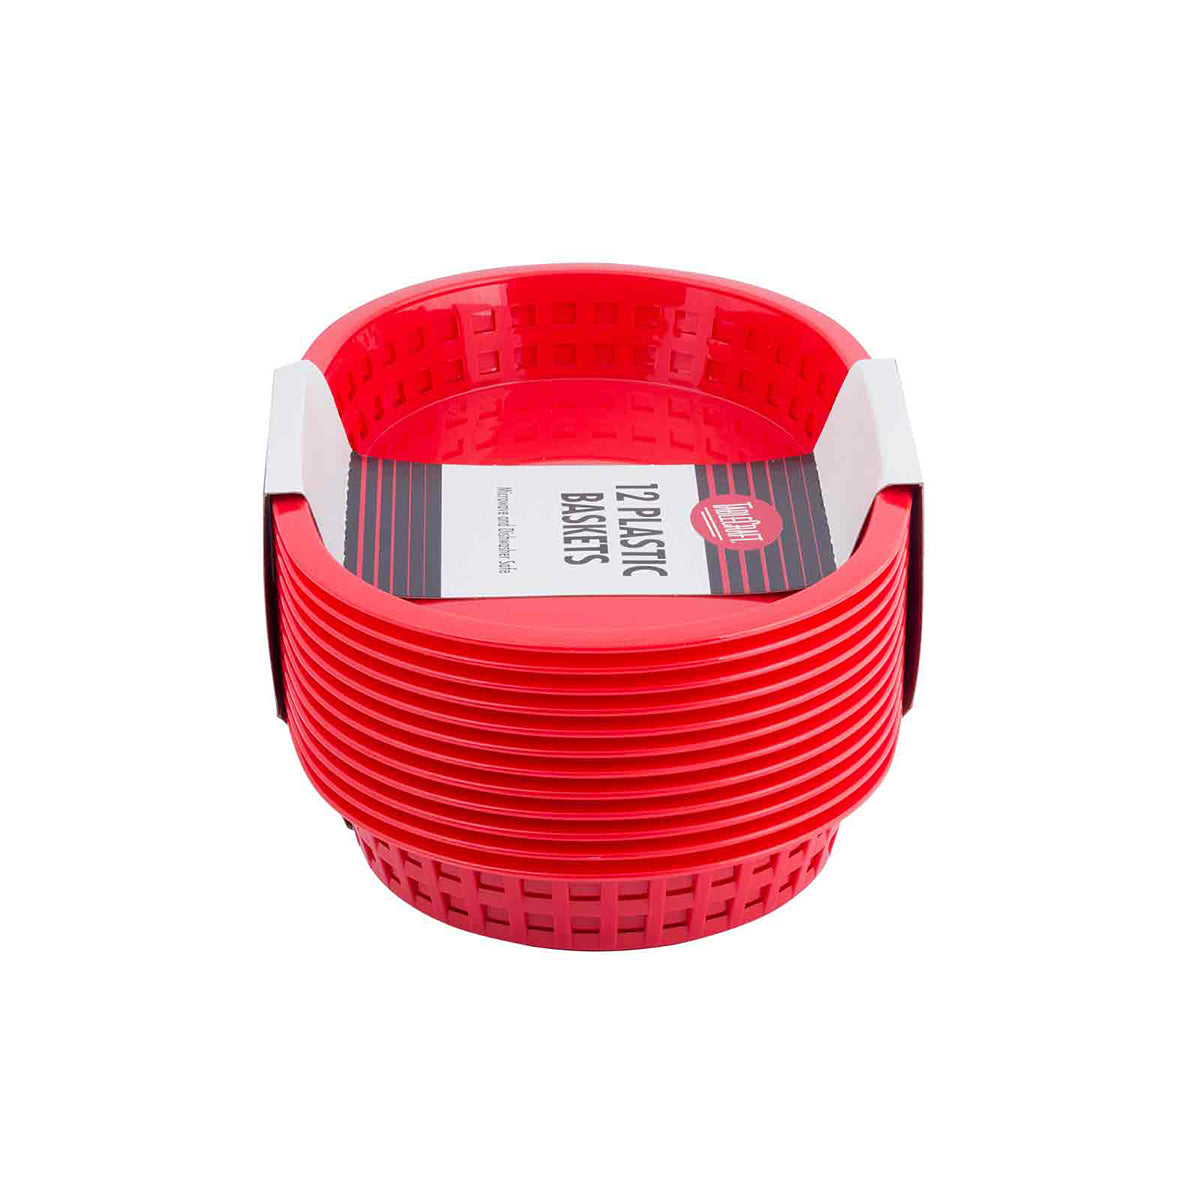 Canastilla Oval de Plástico Rojo 24 x 15 x 5 cm 12 piezas